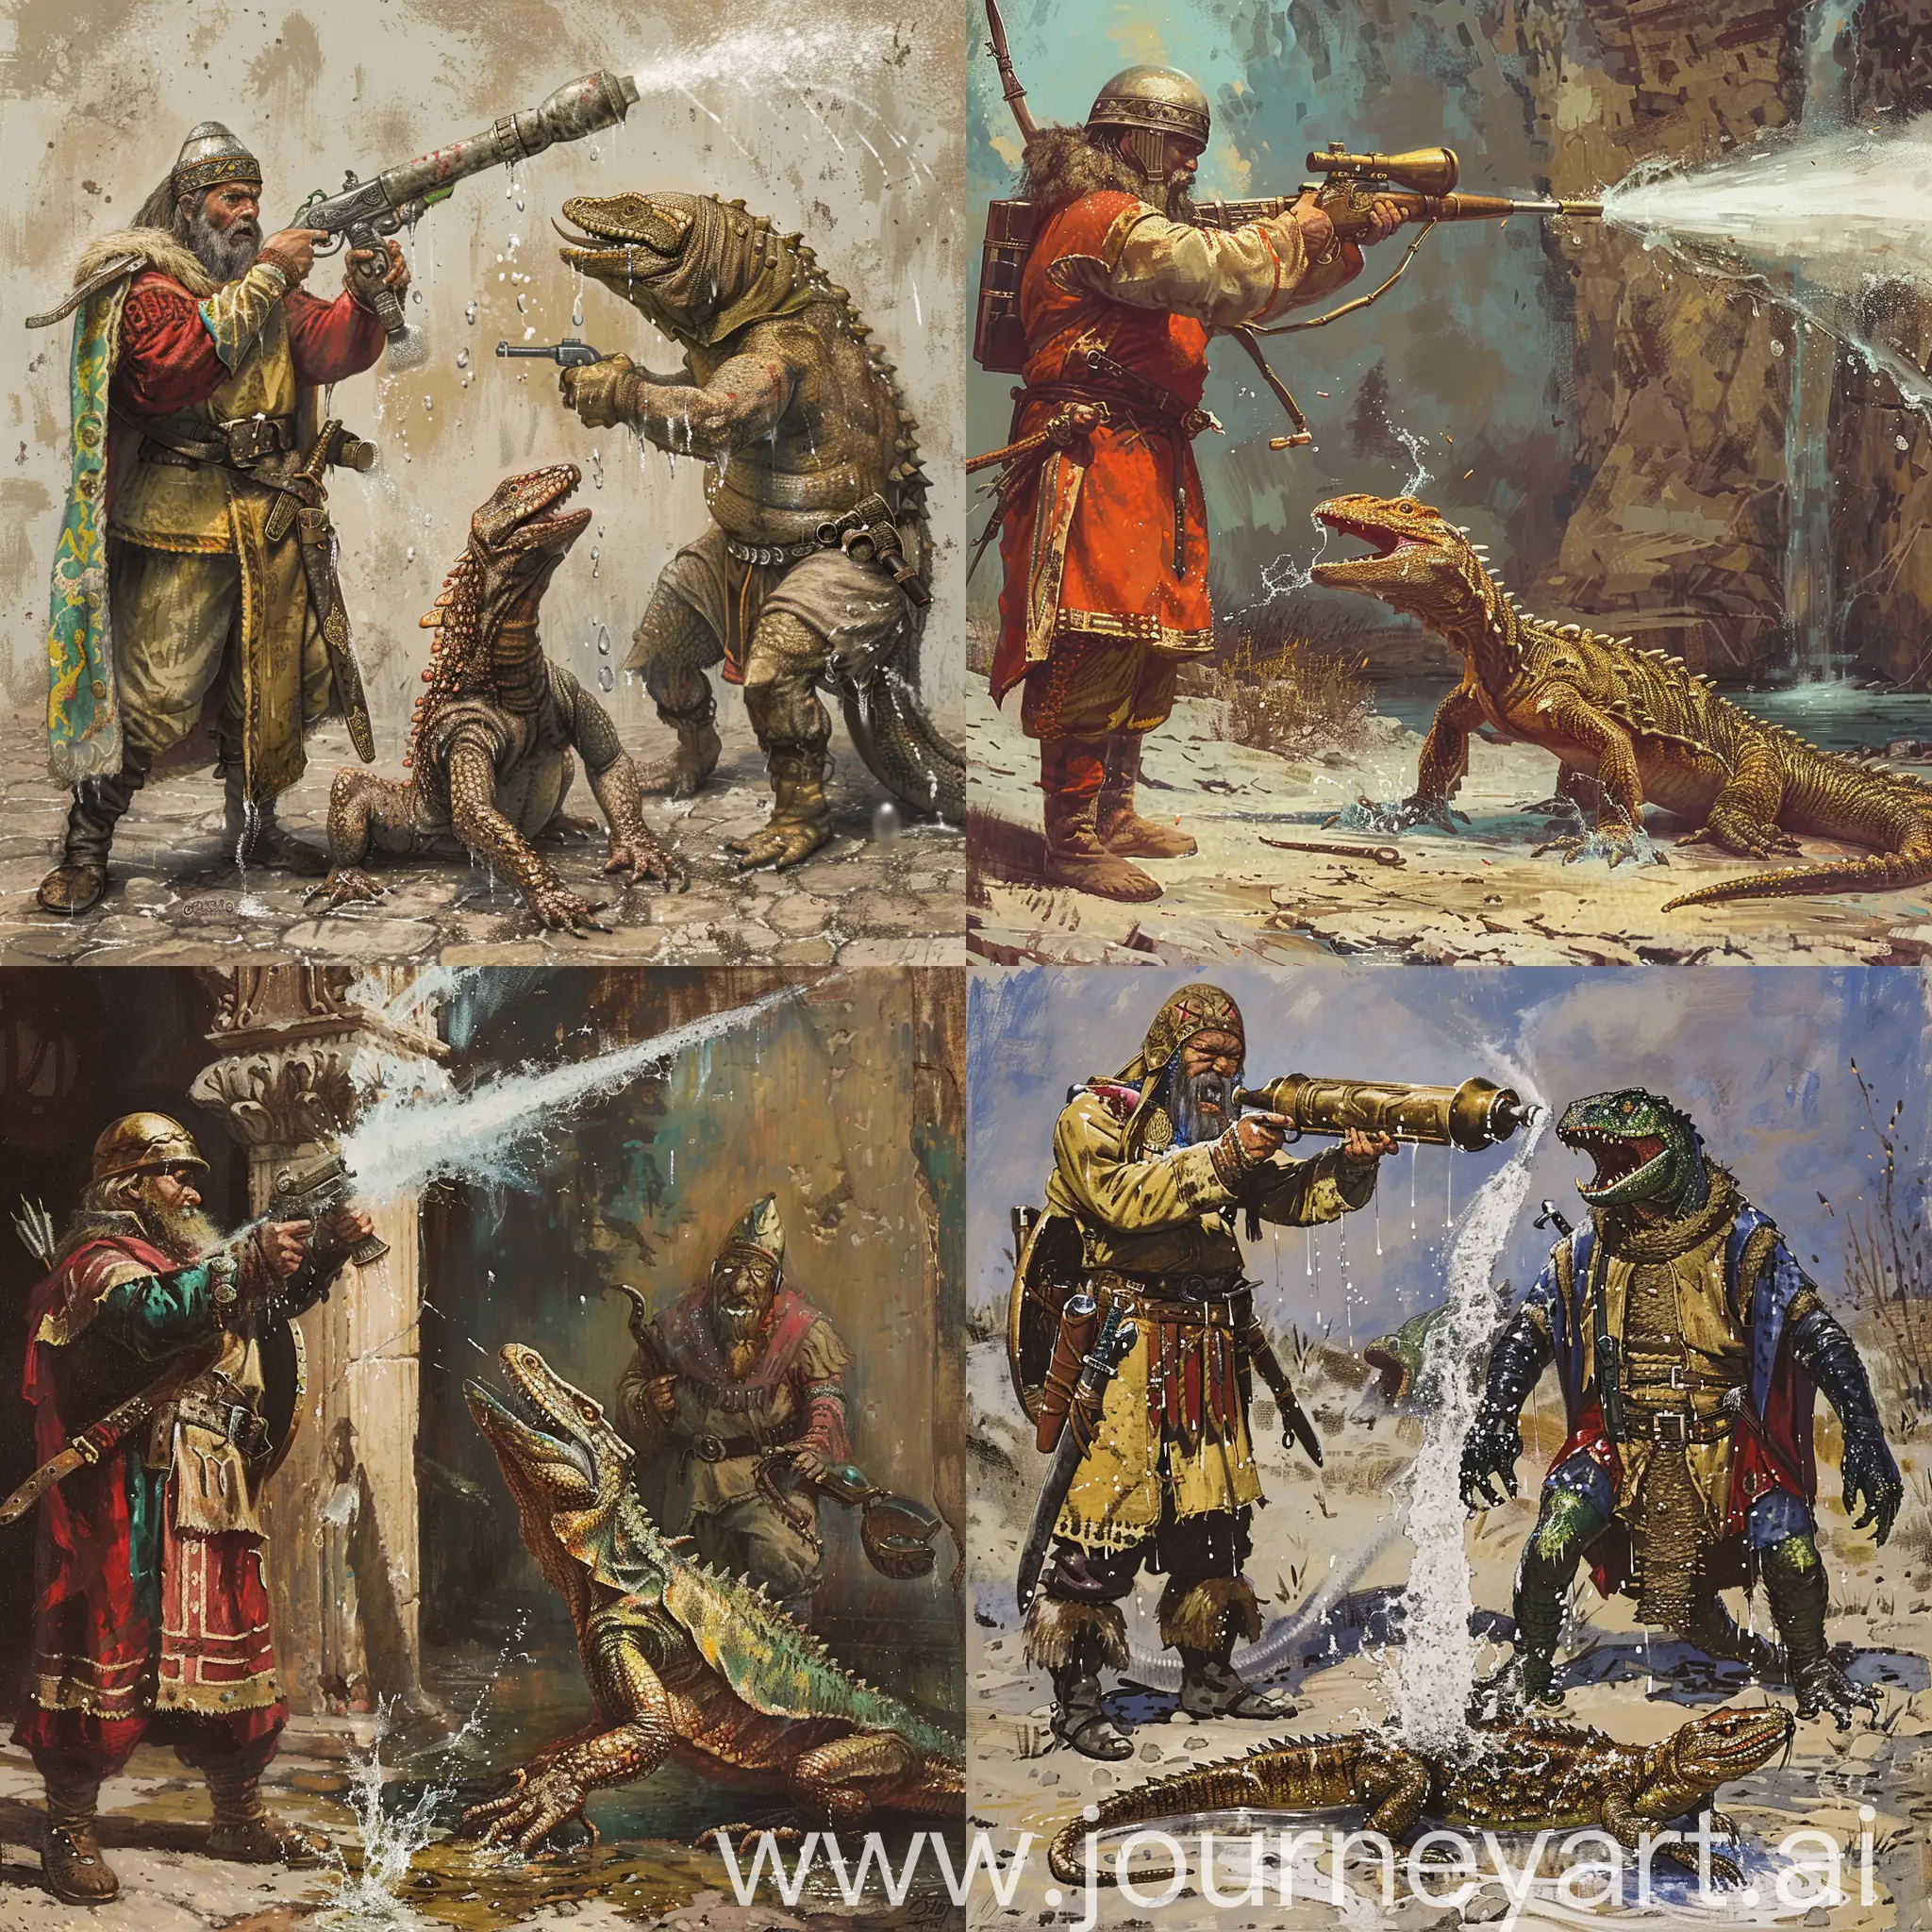 Slavic-Warrior-Battling-Reptilian-Lizard-Monster-with-Water-Pistol